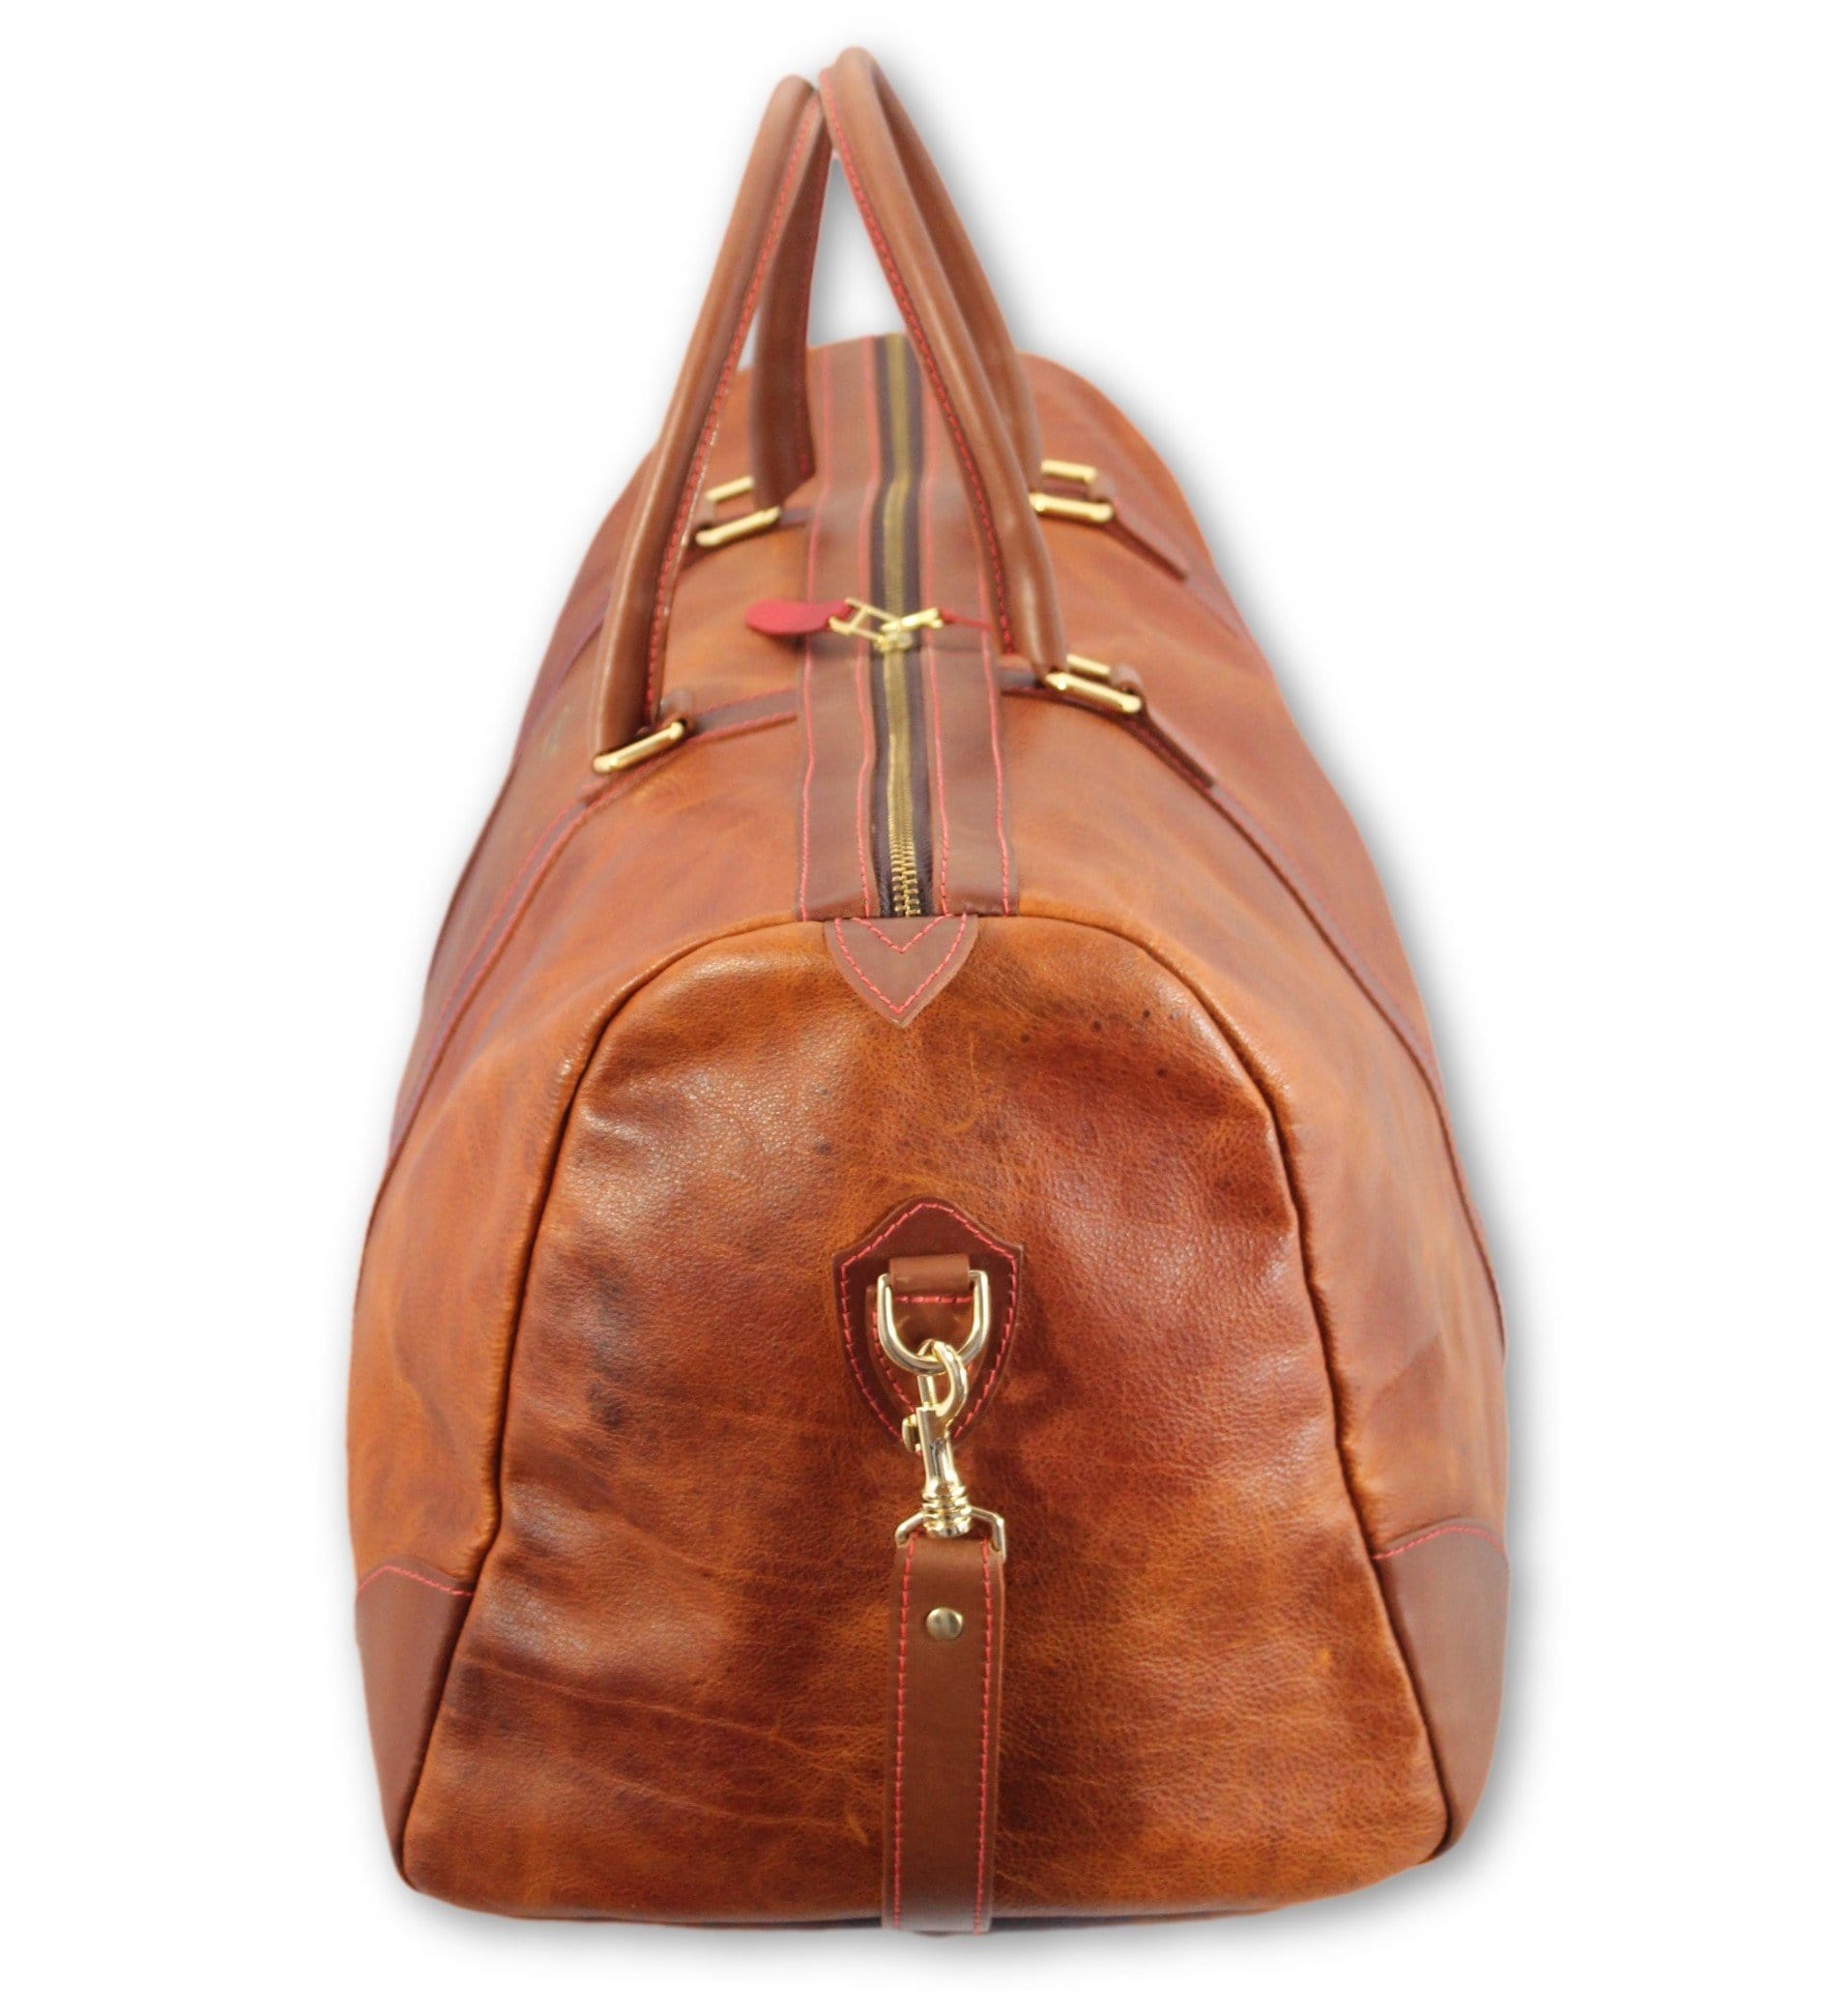 Weekend bag, brown leather